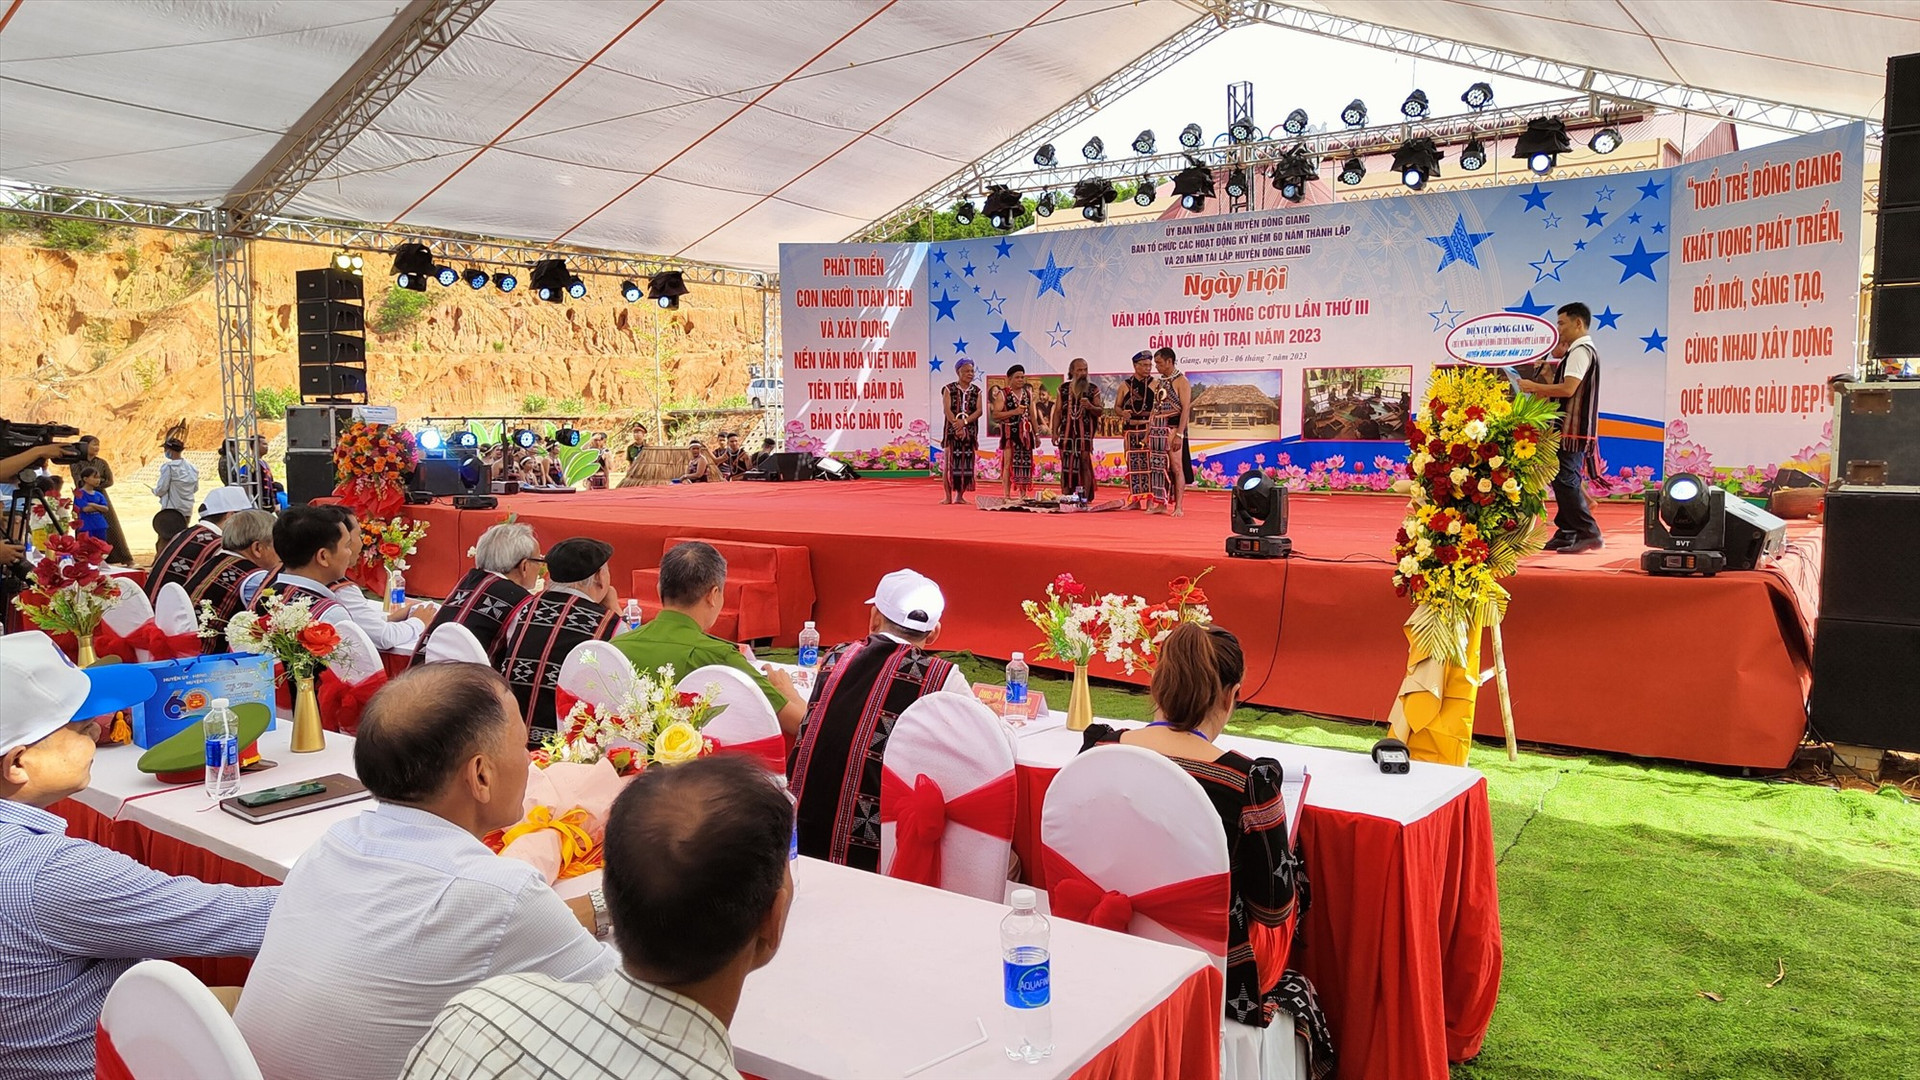 Lễ khi mạc Ngày hội văn hóa truyền thống Cơ Tu lần thứ III được UBND huyện Đông Giang tổ chức vào sáng nay 3/7. Ảnh: V.R